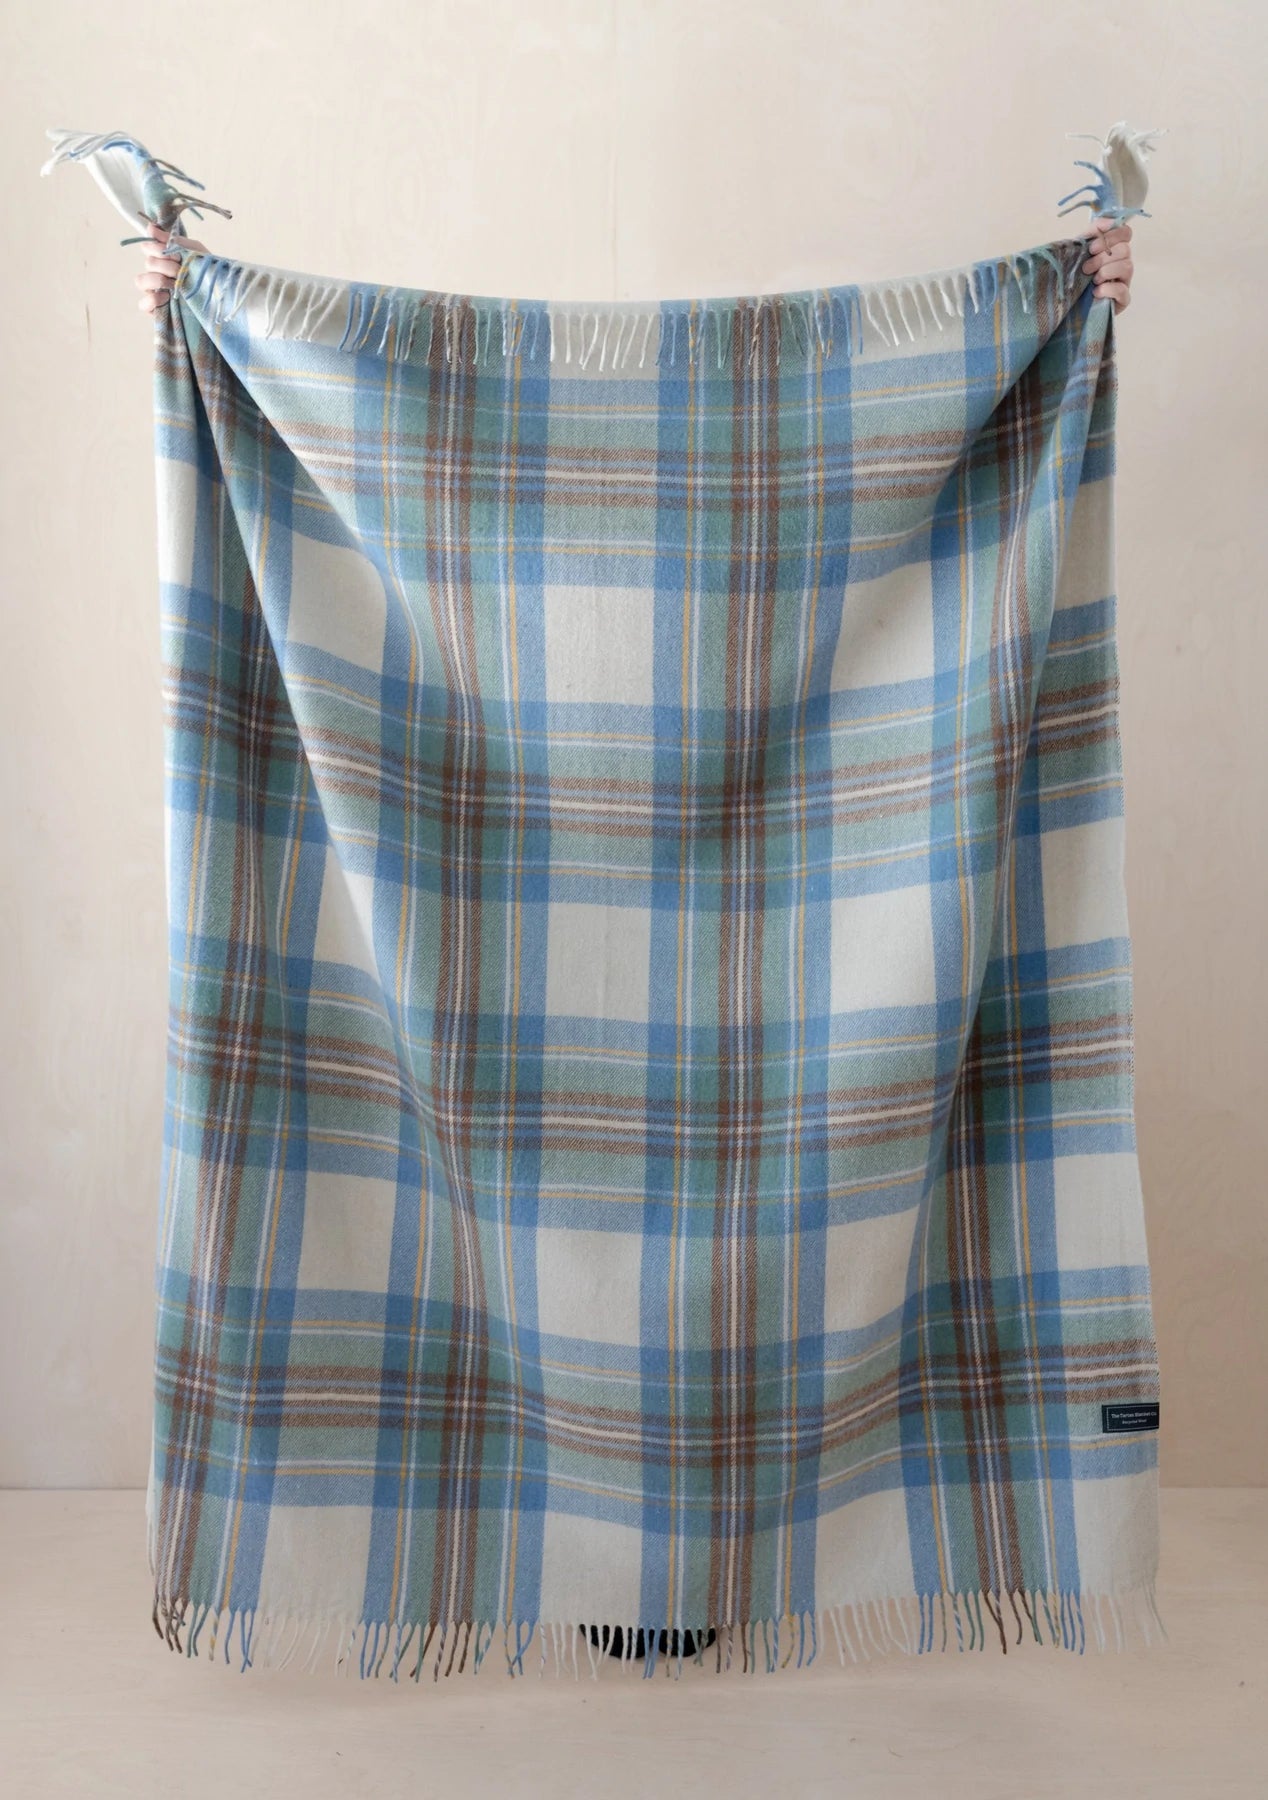 Recycled Wool Waterproof Picnic Blanket - Tartan Blanket Co.